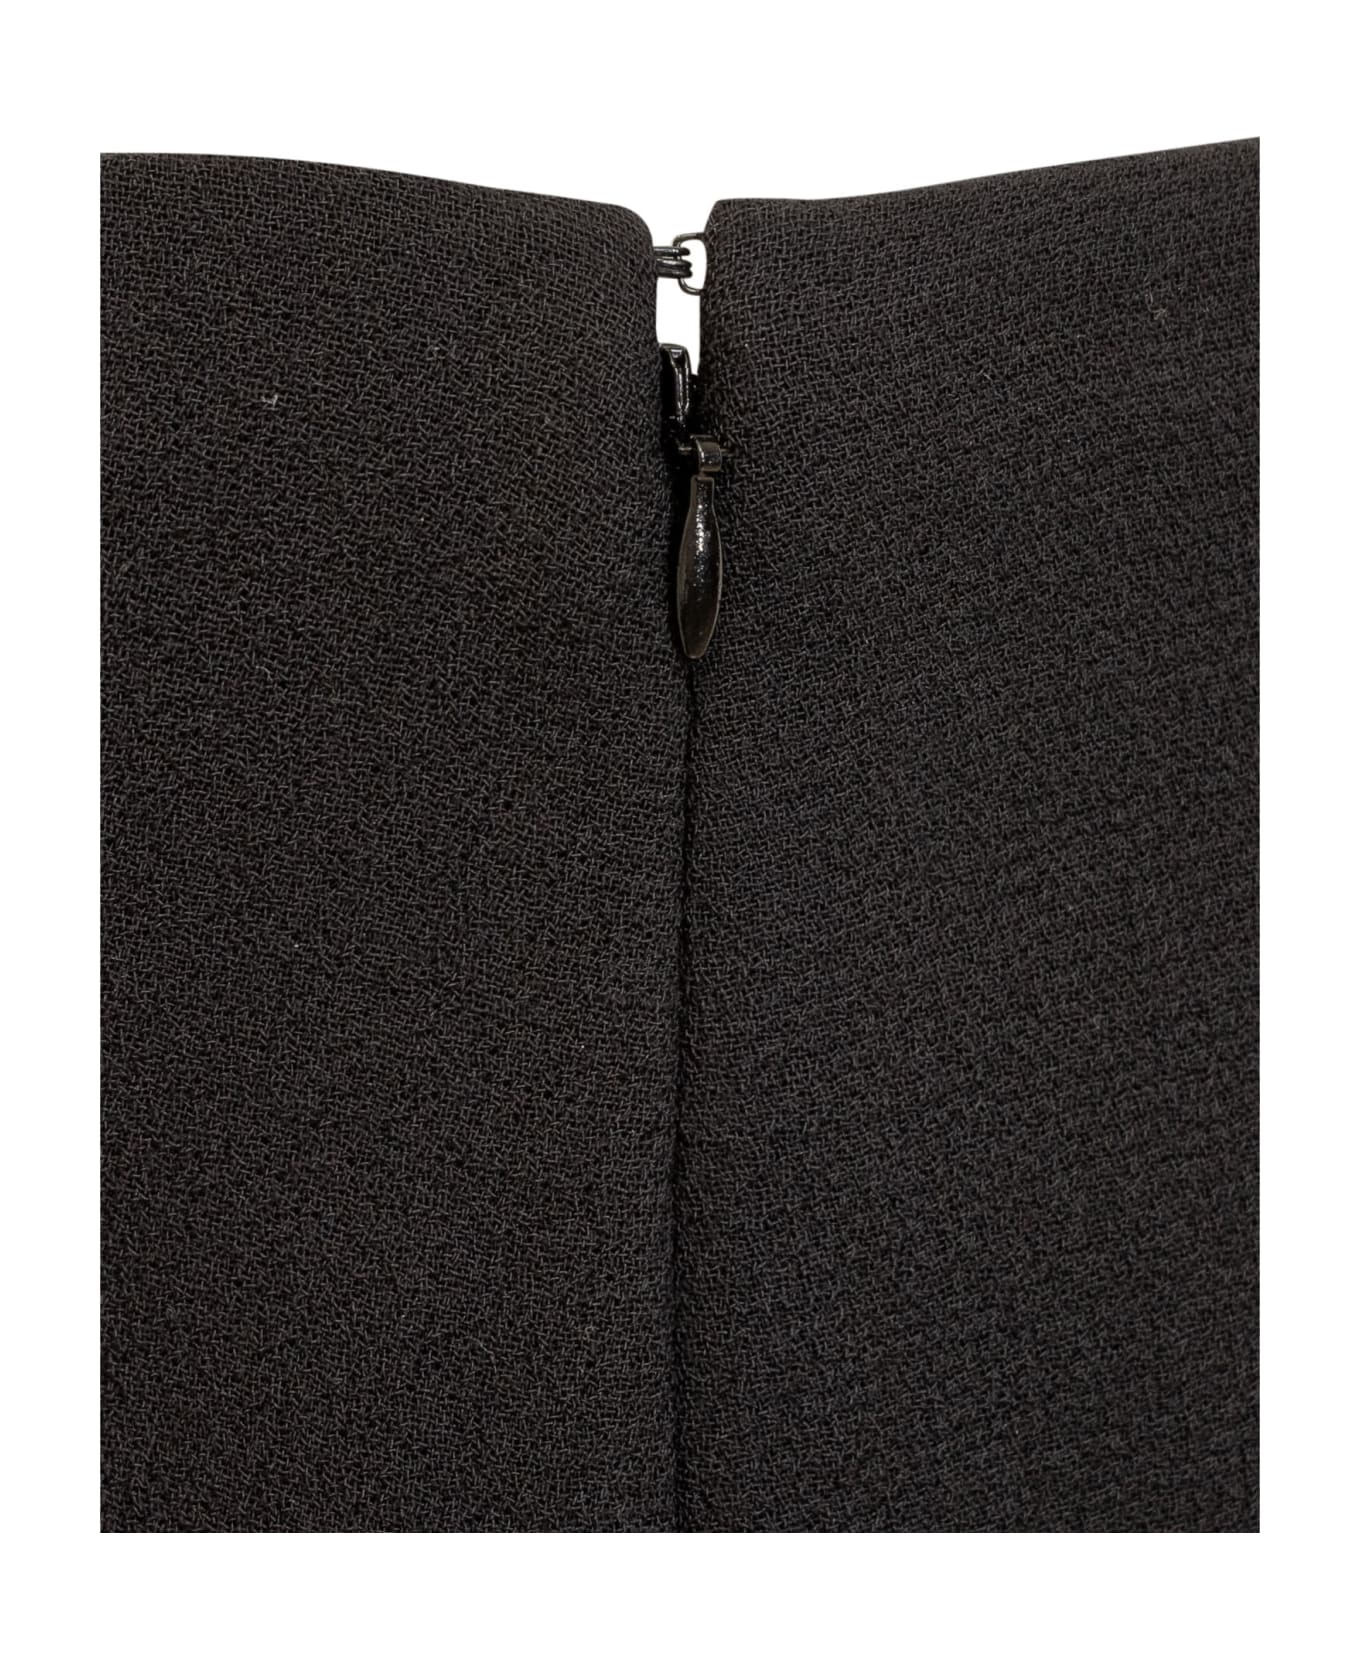 Del Core Pencil Skirt - BLACK